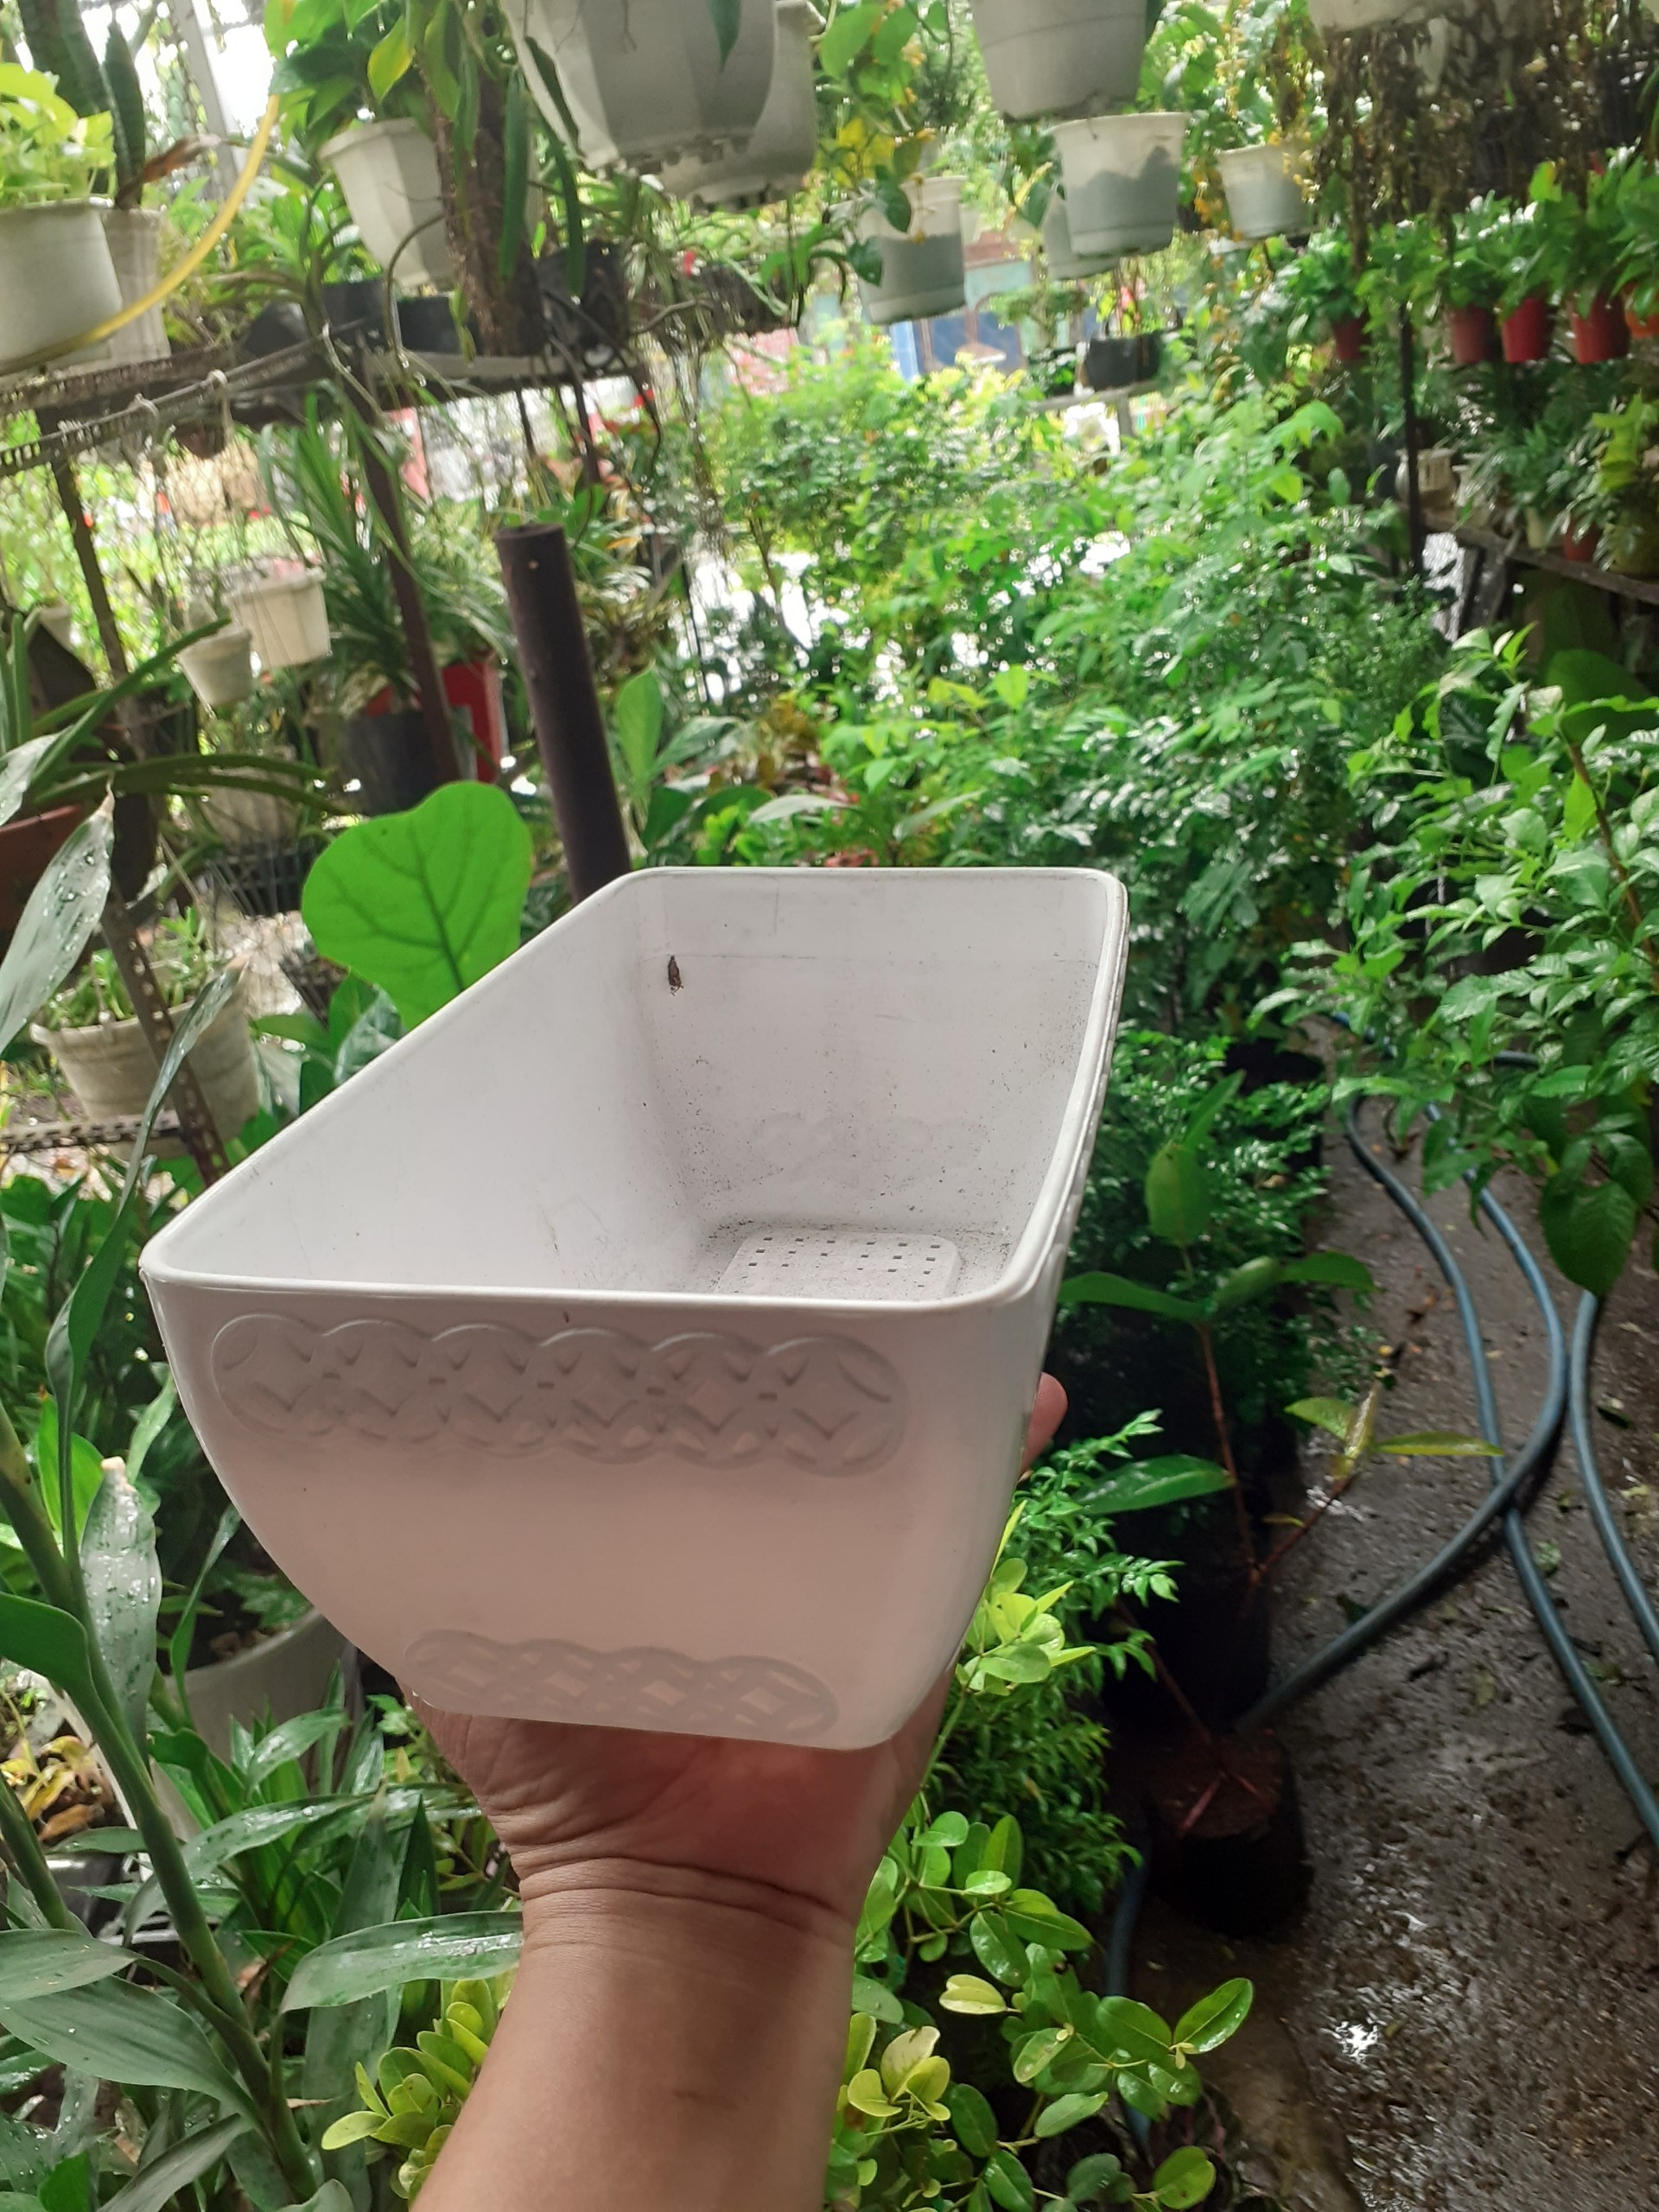 1 Cái chậu nhựa (mủ) trồng cây hình chữ nhật đồng tiền